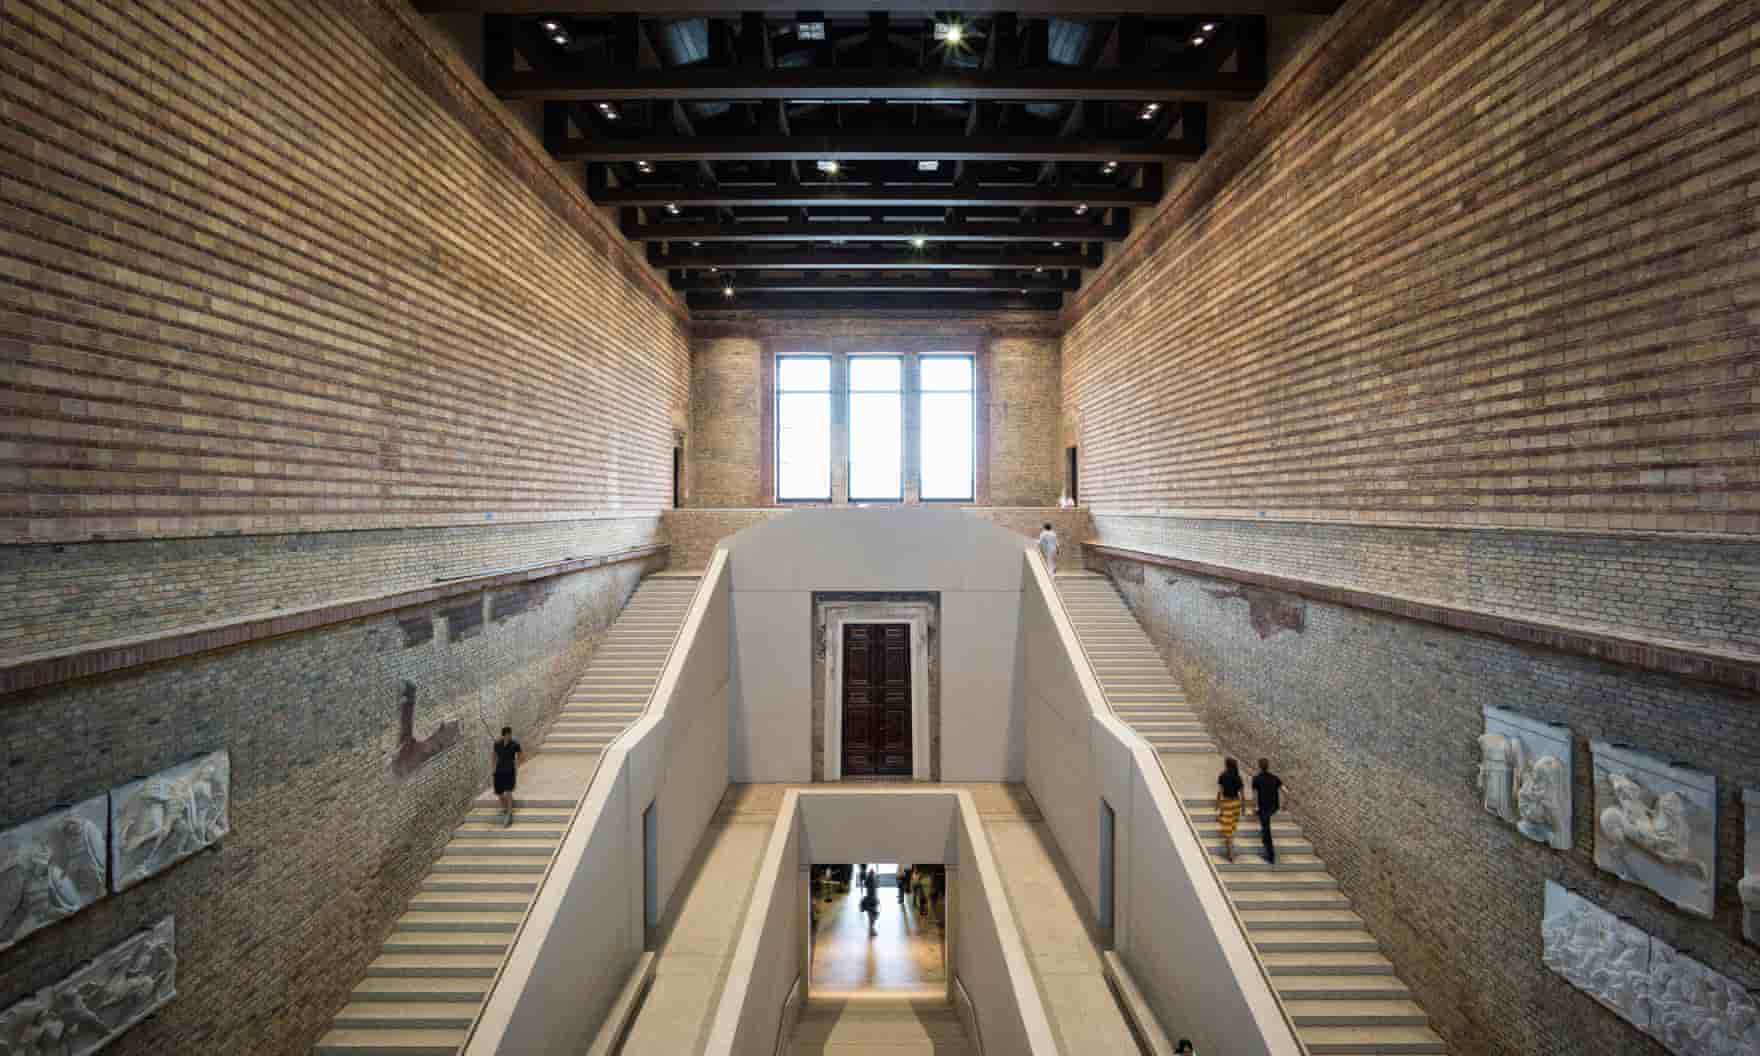 Những lối cầu thang bên trong bảo tàng Neues ở Berlin, một trong những công trình do kiến trúc sư Chipperfield thiết kế. Ảnh: Alamy